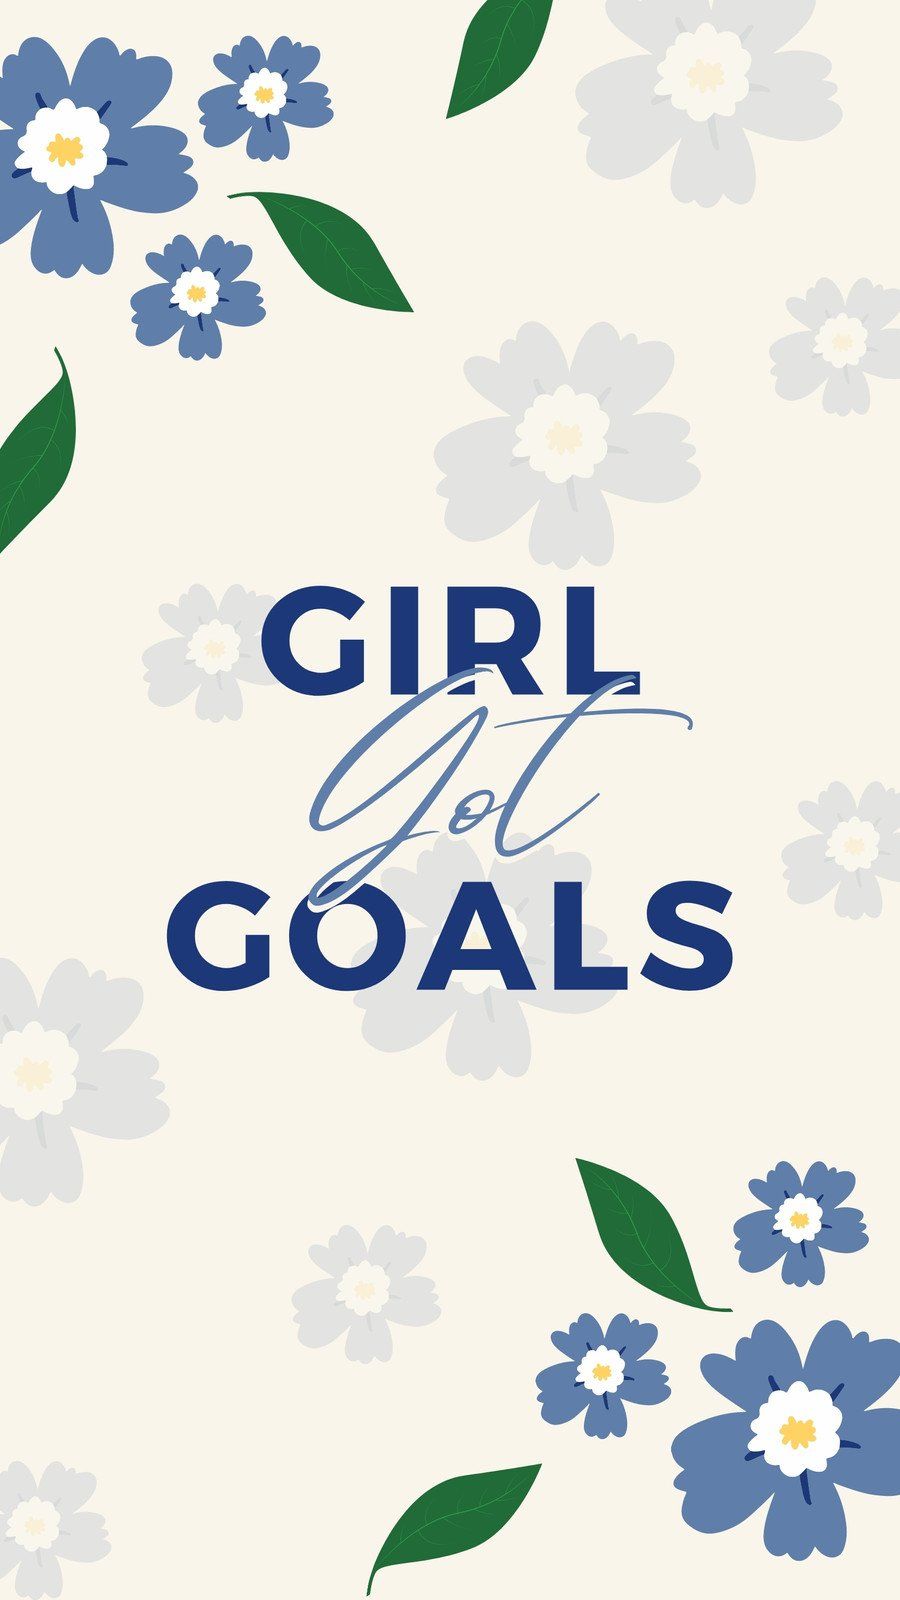 Girl got goals inspirational flowers